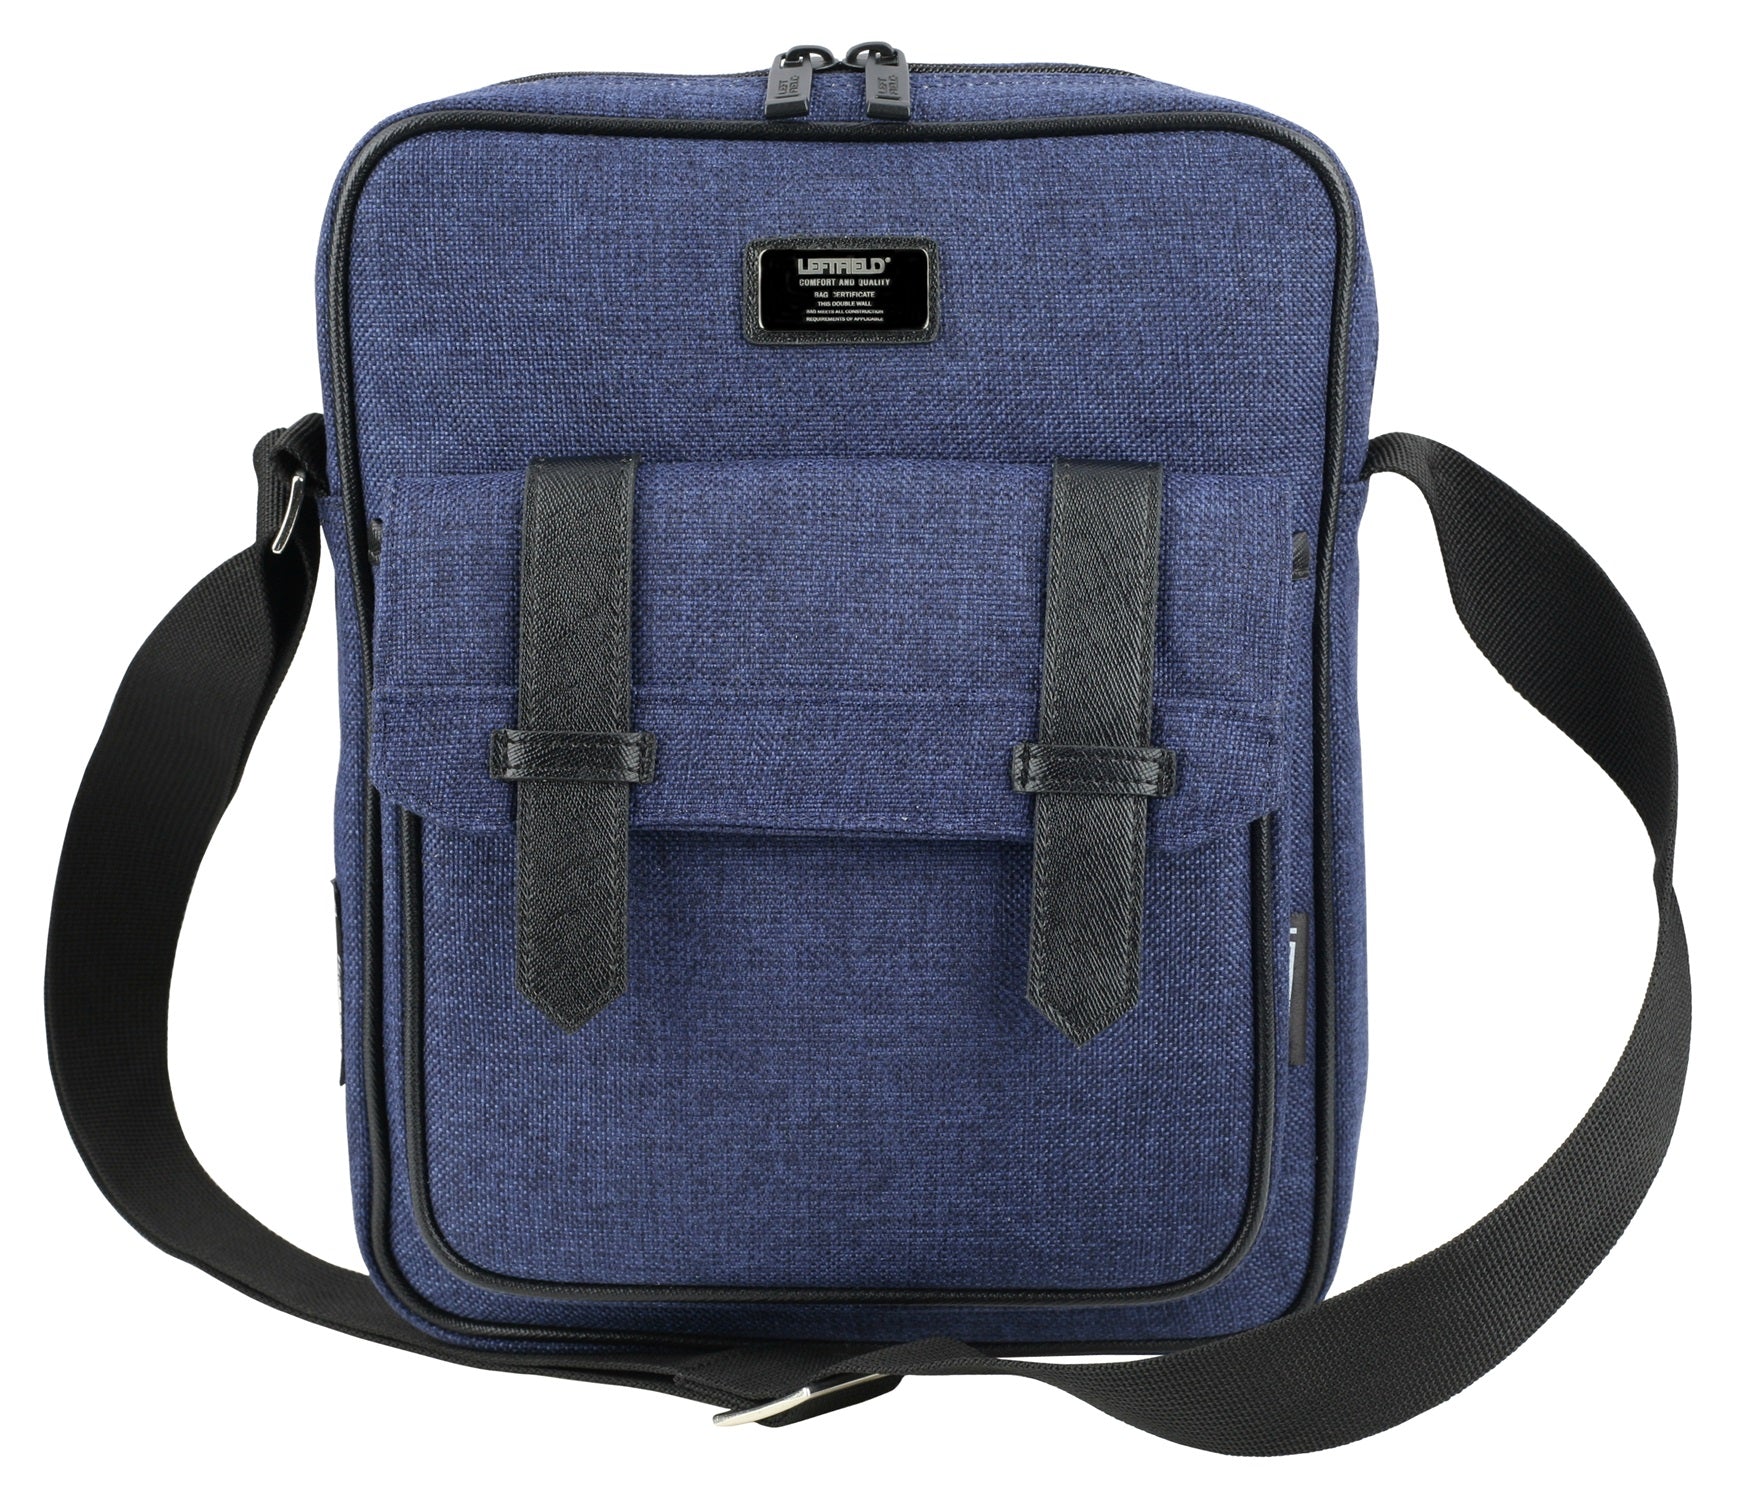 Navy Blue Canvas Satchel Style Crossbody Bags